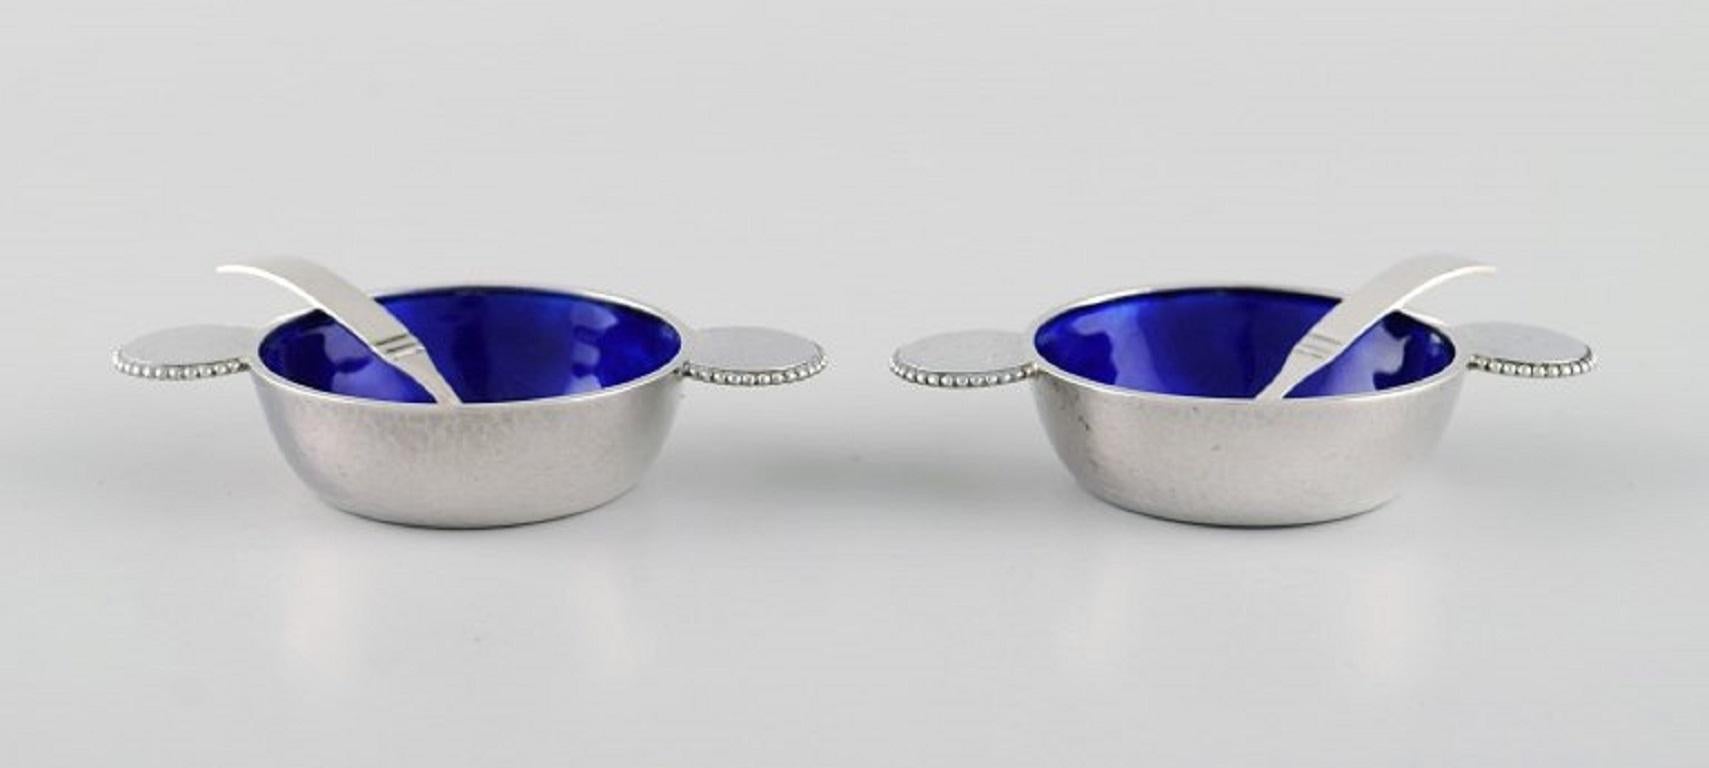 Zwei seltene Salzgefäße von Evald Nielsen aus Sterlingsilber mit königsblauer Emaille und Perlenrand. 
Löffel eines dänischen Silberschmieds. 
1920/30's.
Das Salzgefäß misst: 7.8 x 1,5 cm.
Länge des Löffels: 5,5 cm.
In ausgezeichnetem